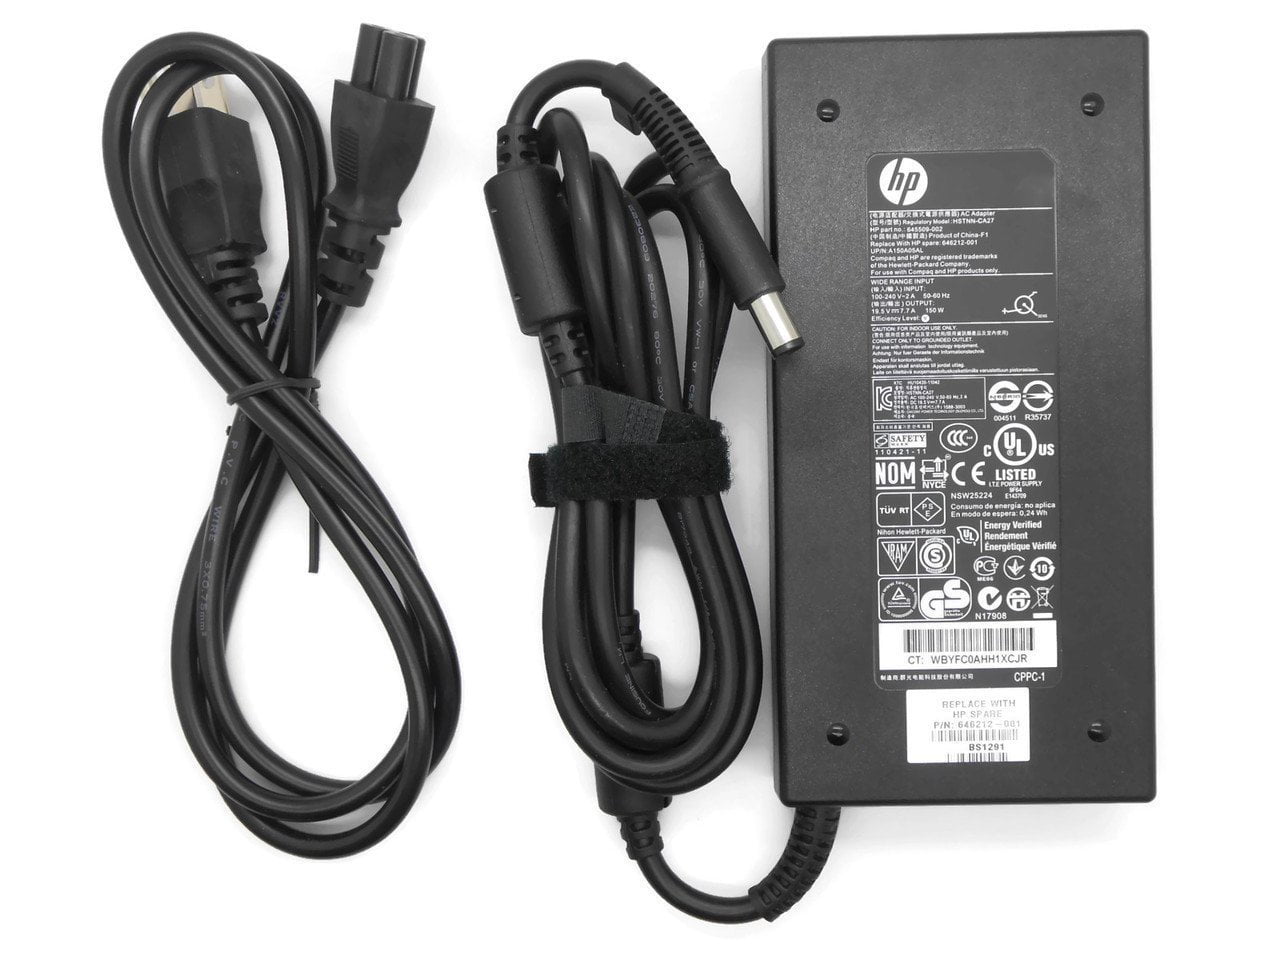 New Genuine HP watt Slim Smart pin AC Power Adapter 677763-001 Walmart.com